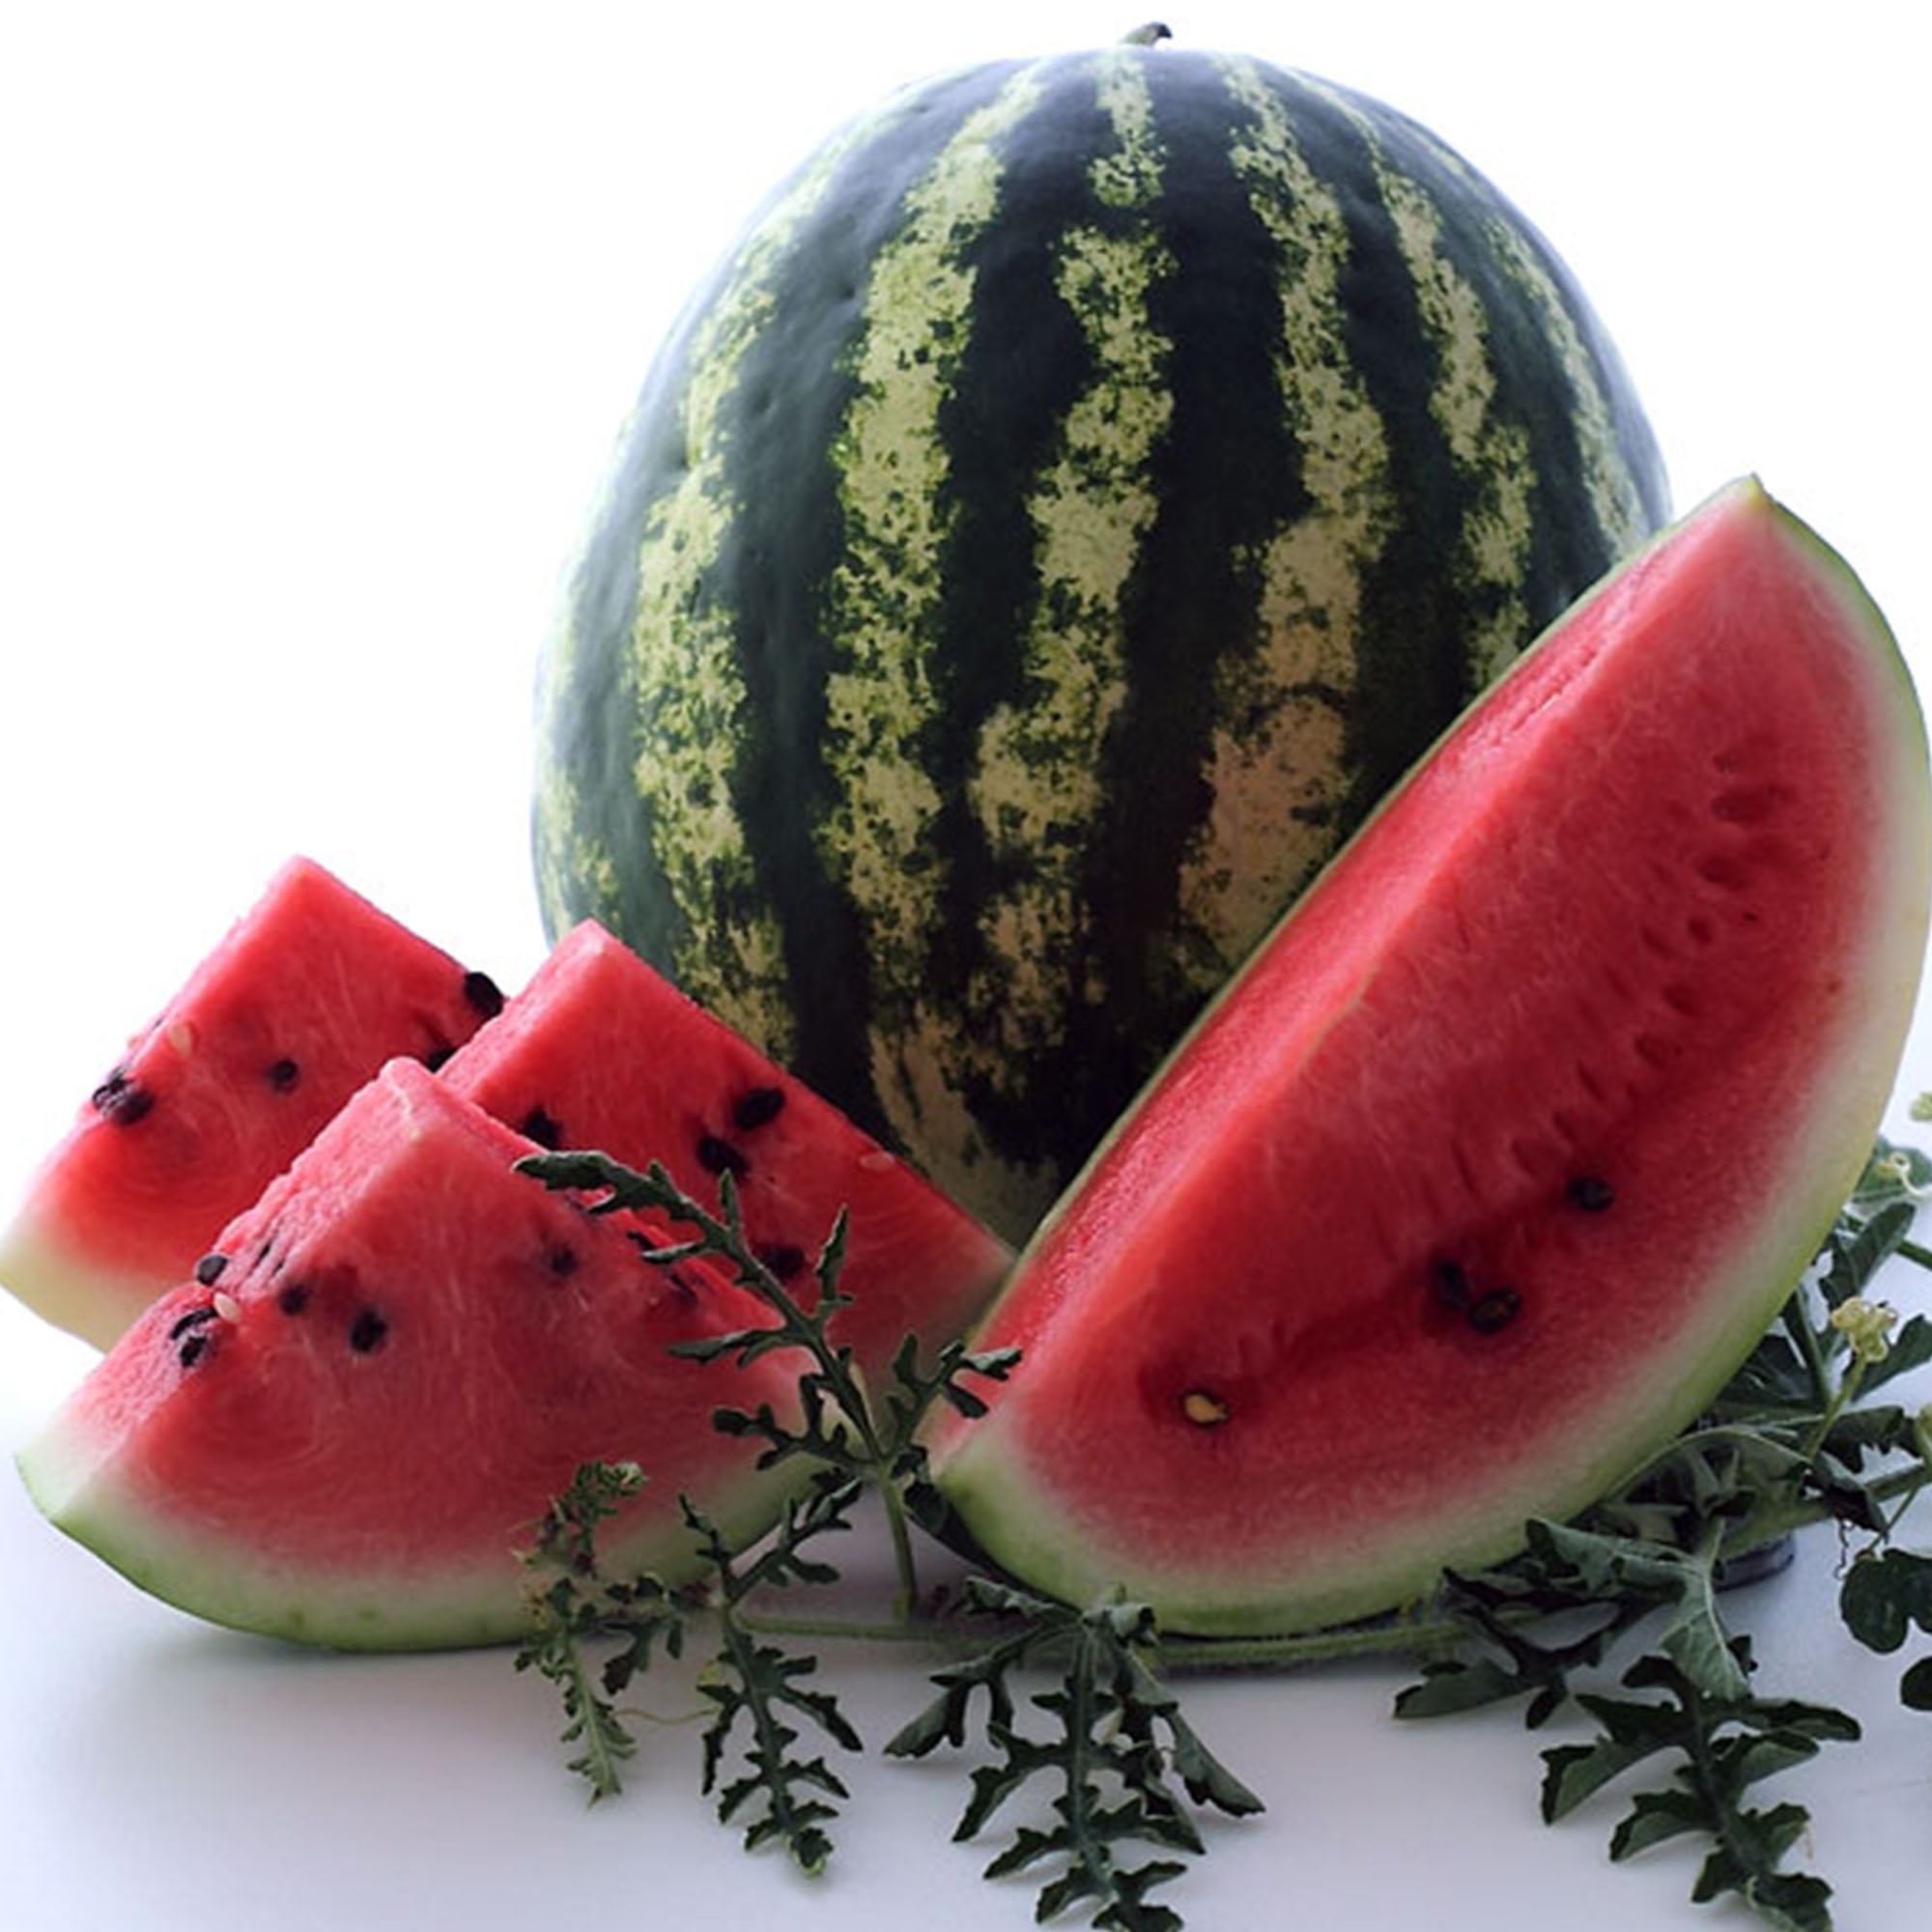 20 Pcs Seeds Mixed Colors Watermelon NON-GMO Rare Fruit Organic Home Garden New 